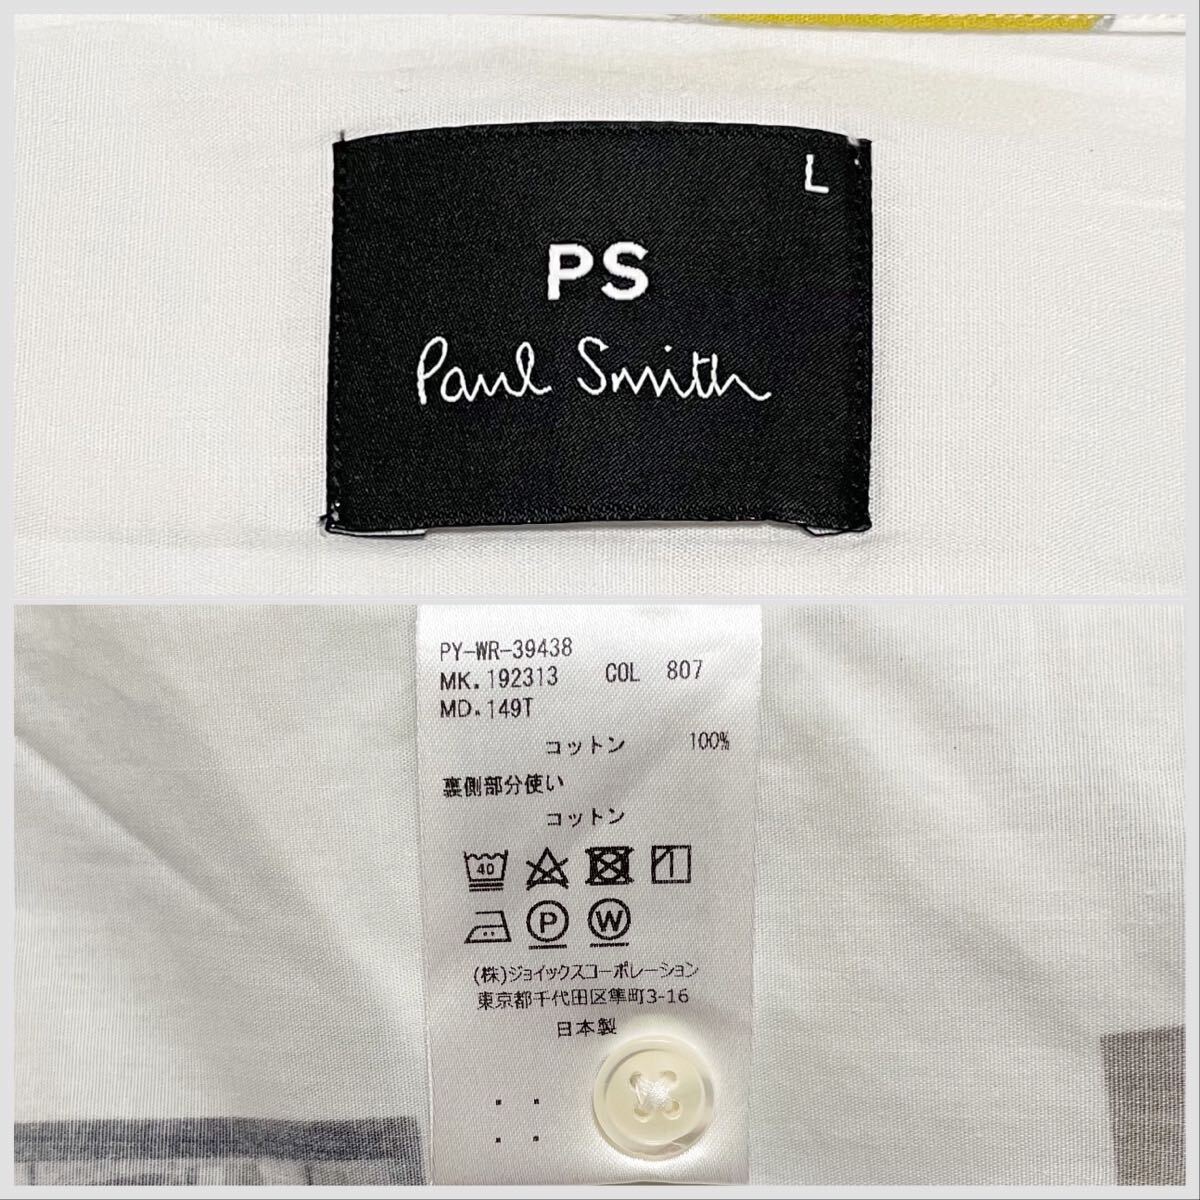 極美品 ポールスミス PS PAUL SMITH 近年モデル HAROLD'S PHOTOS PRINT SHIRT フォトプリント転写 総柄 長袖 シャツ Lサイズ メンズ_画像10